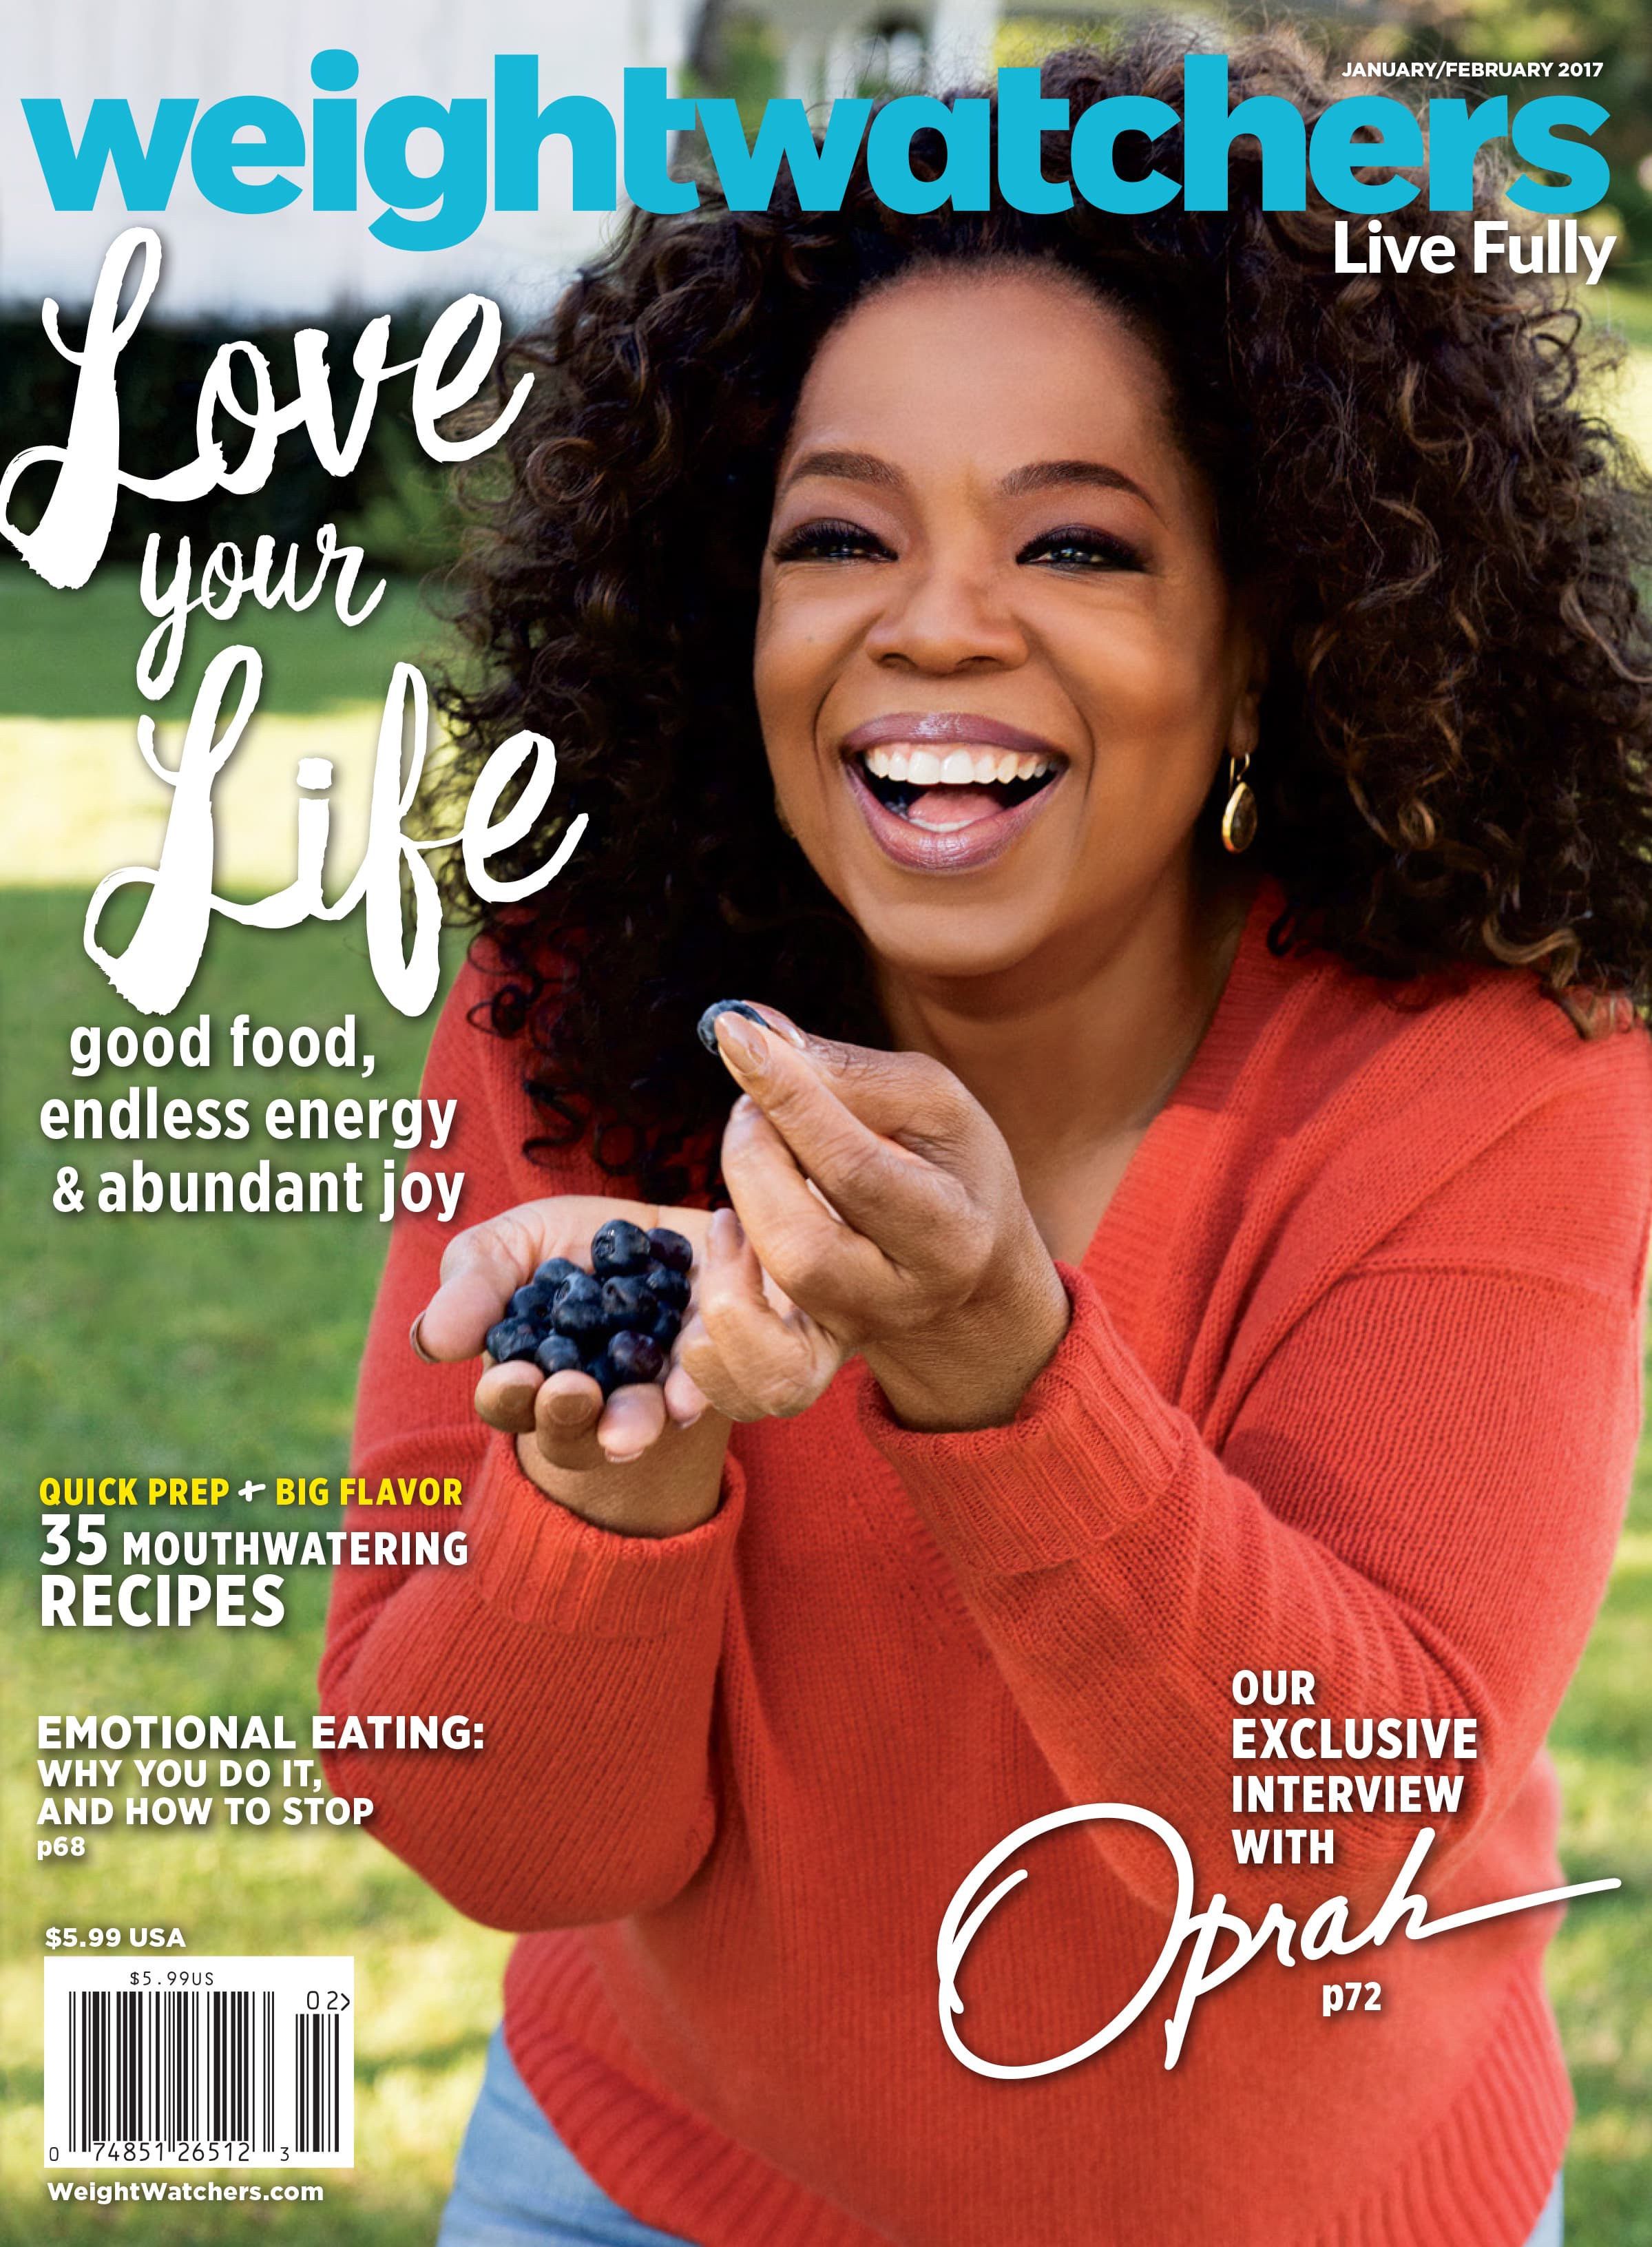 Weight Watchers calls on Oprah Winfrey to help sell wellness